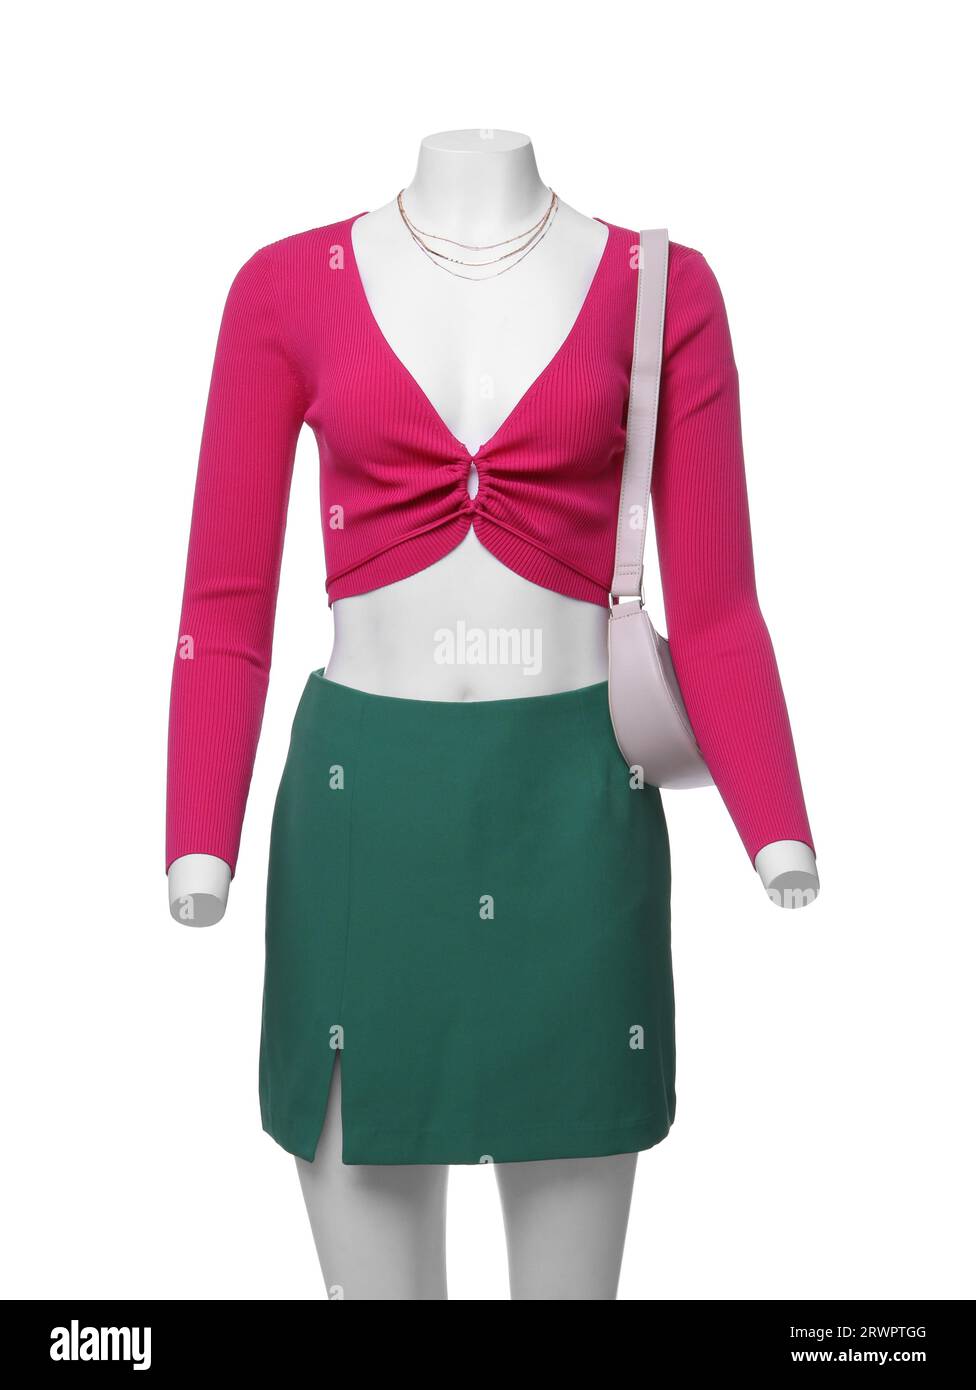 Weibliche Puppe mit grünem Rock und pinkfarbenem Oberteil mit Accessoires isoliert auf Weiß. Stylisches Outfit Stockfoto